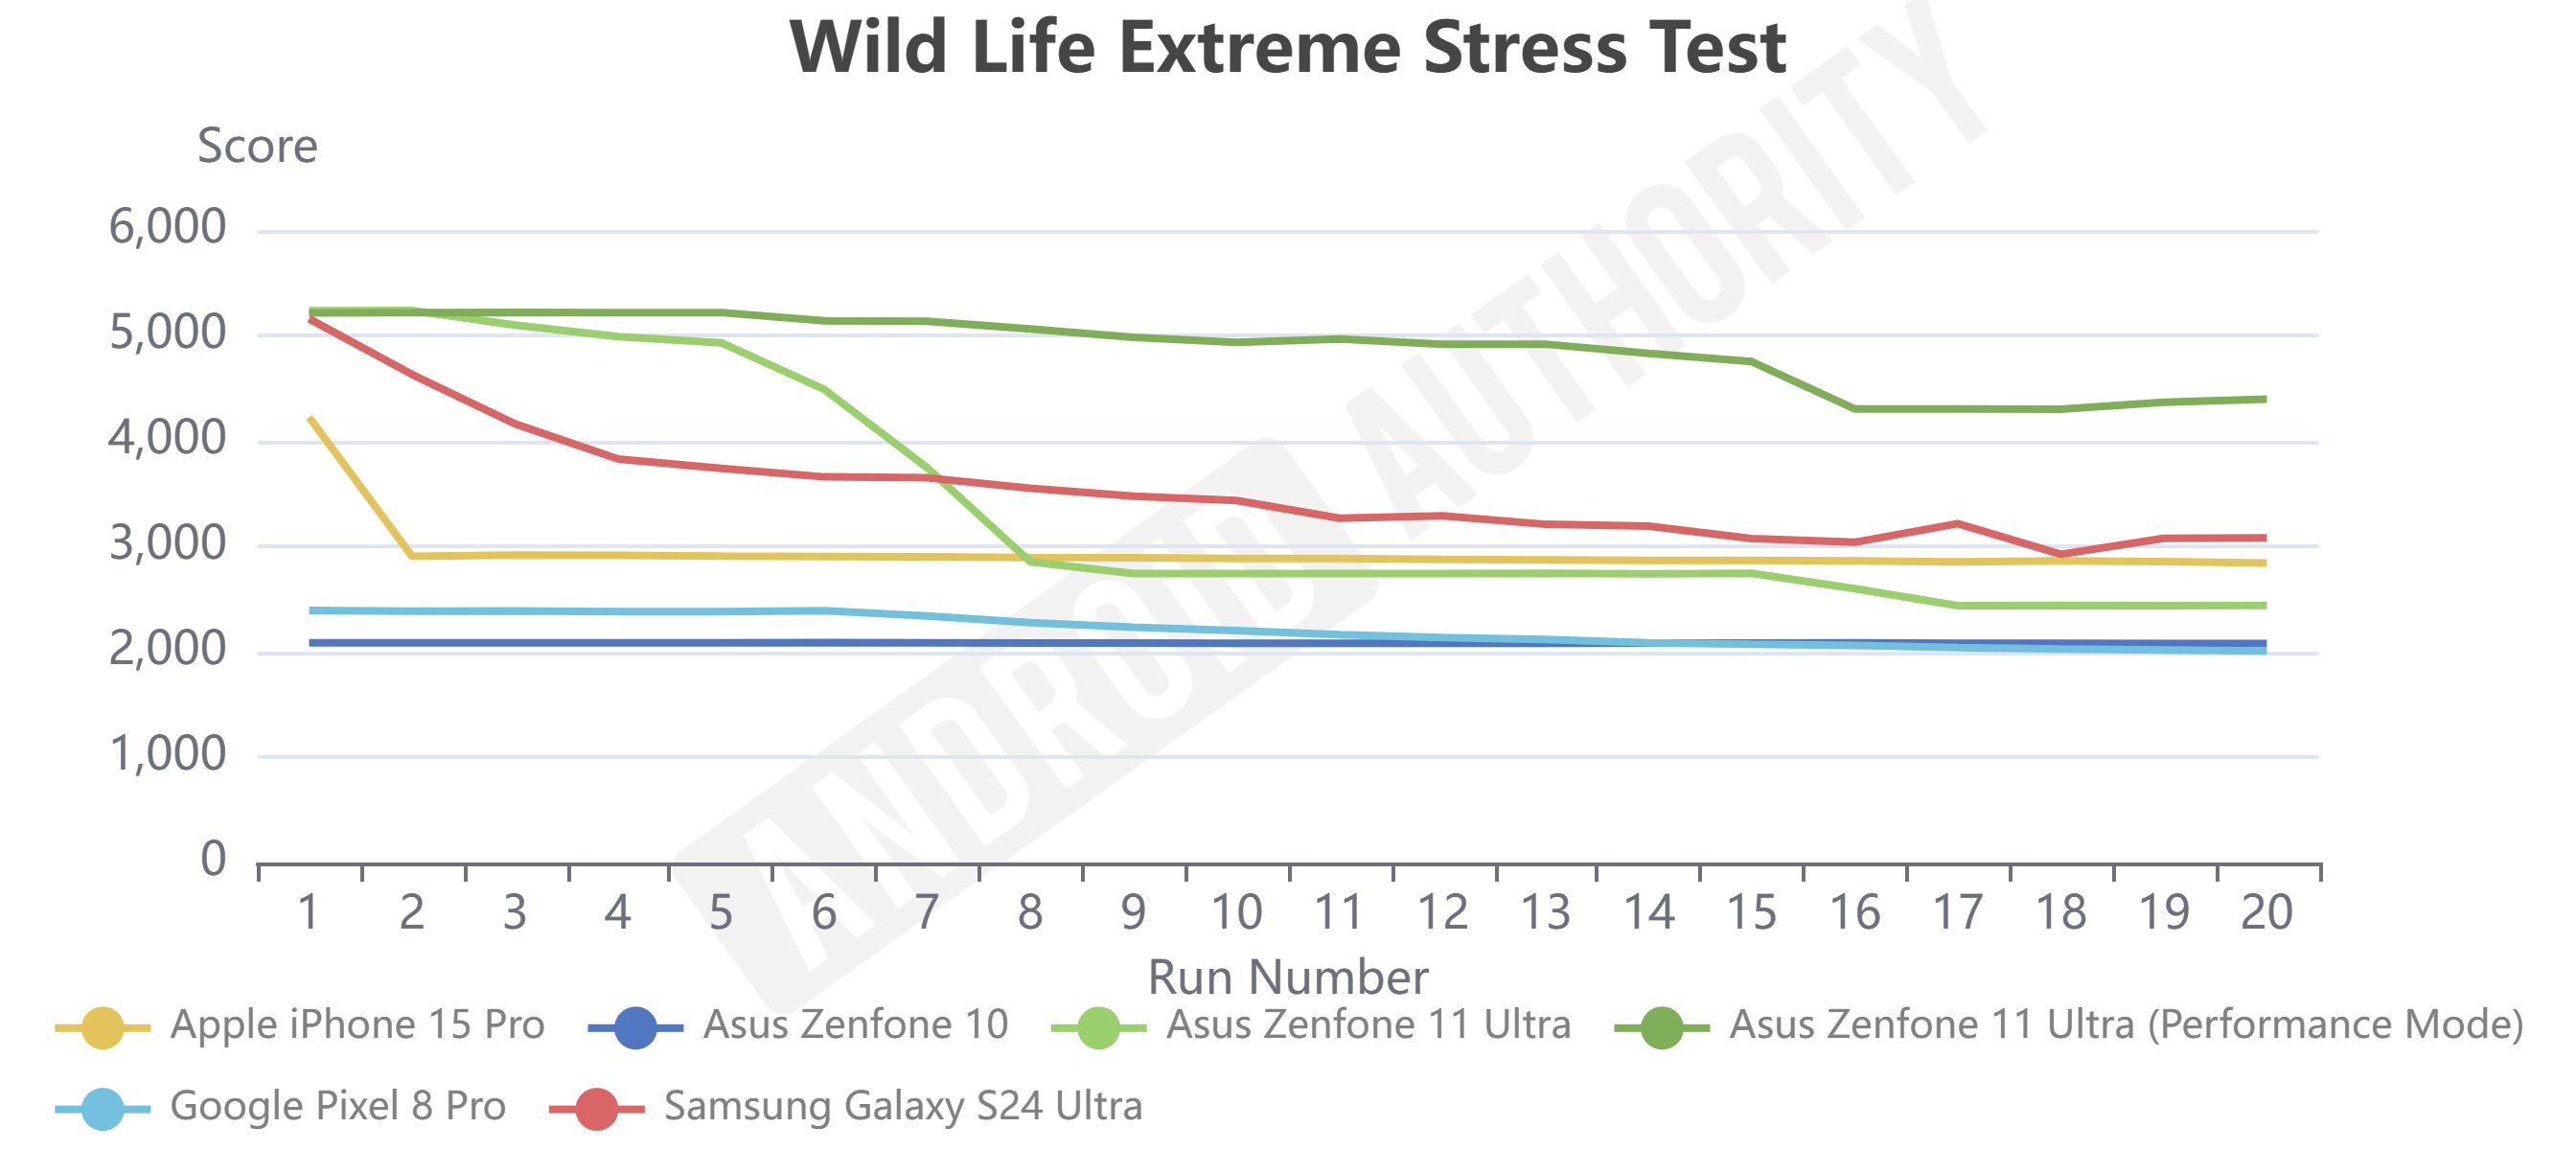 Asus Zenfone 11 Ultra Stress Test chart